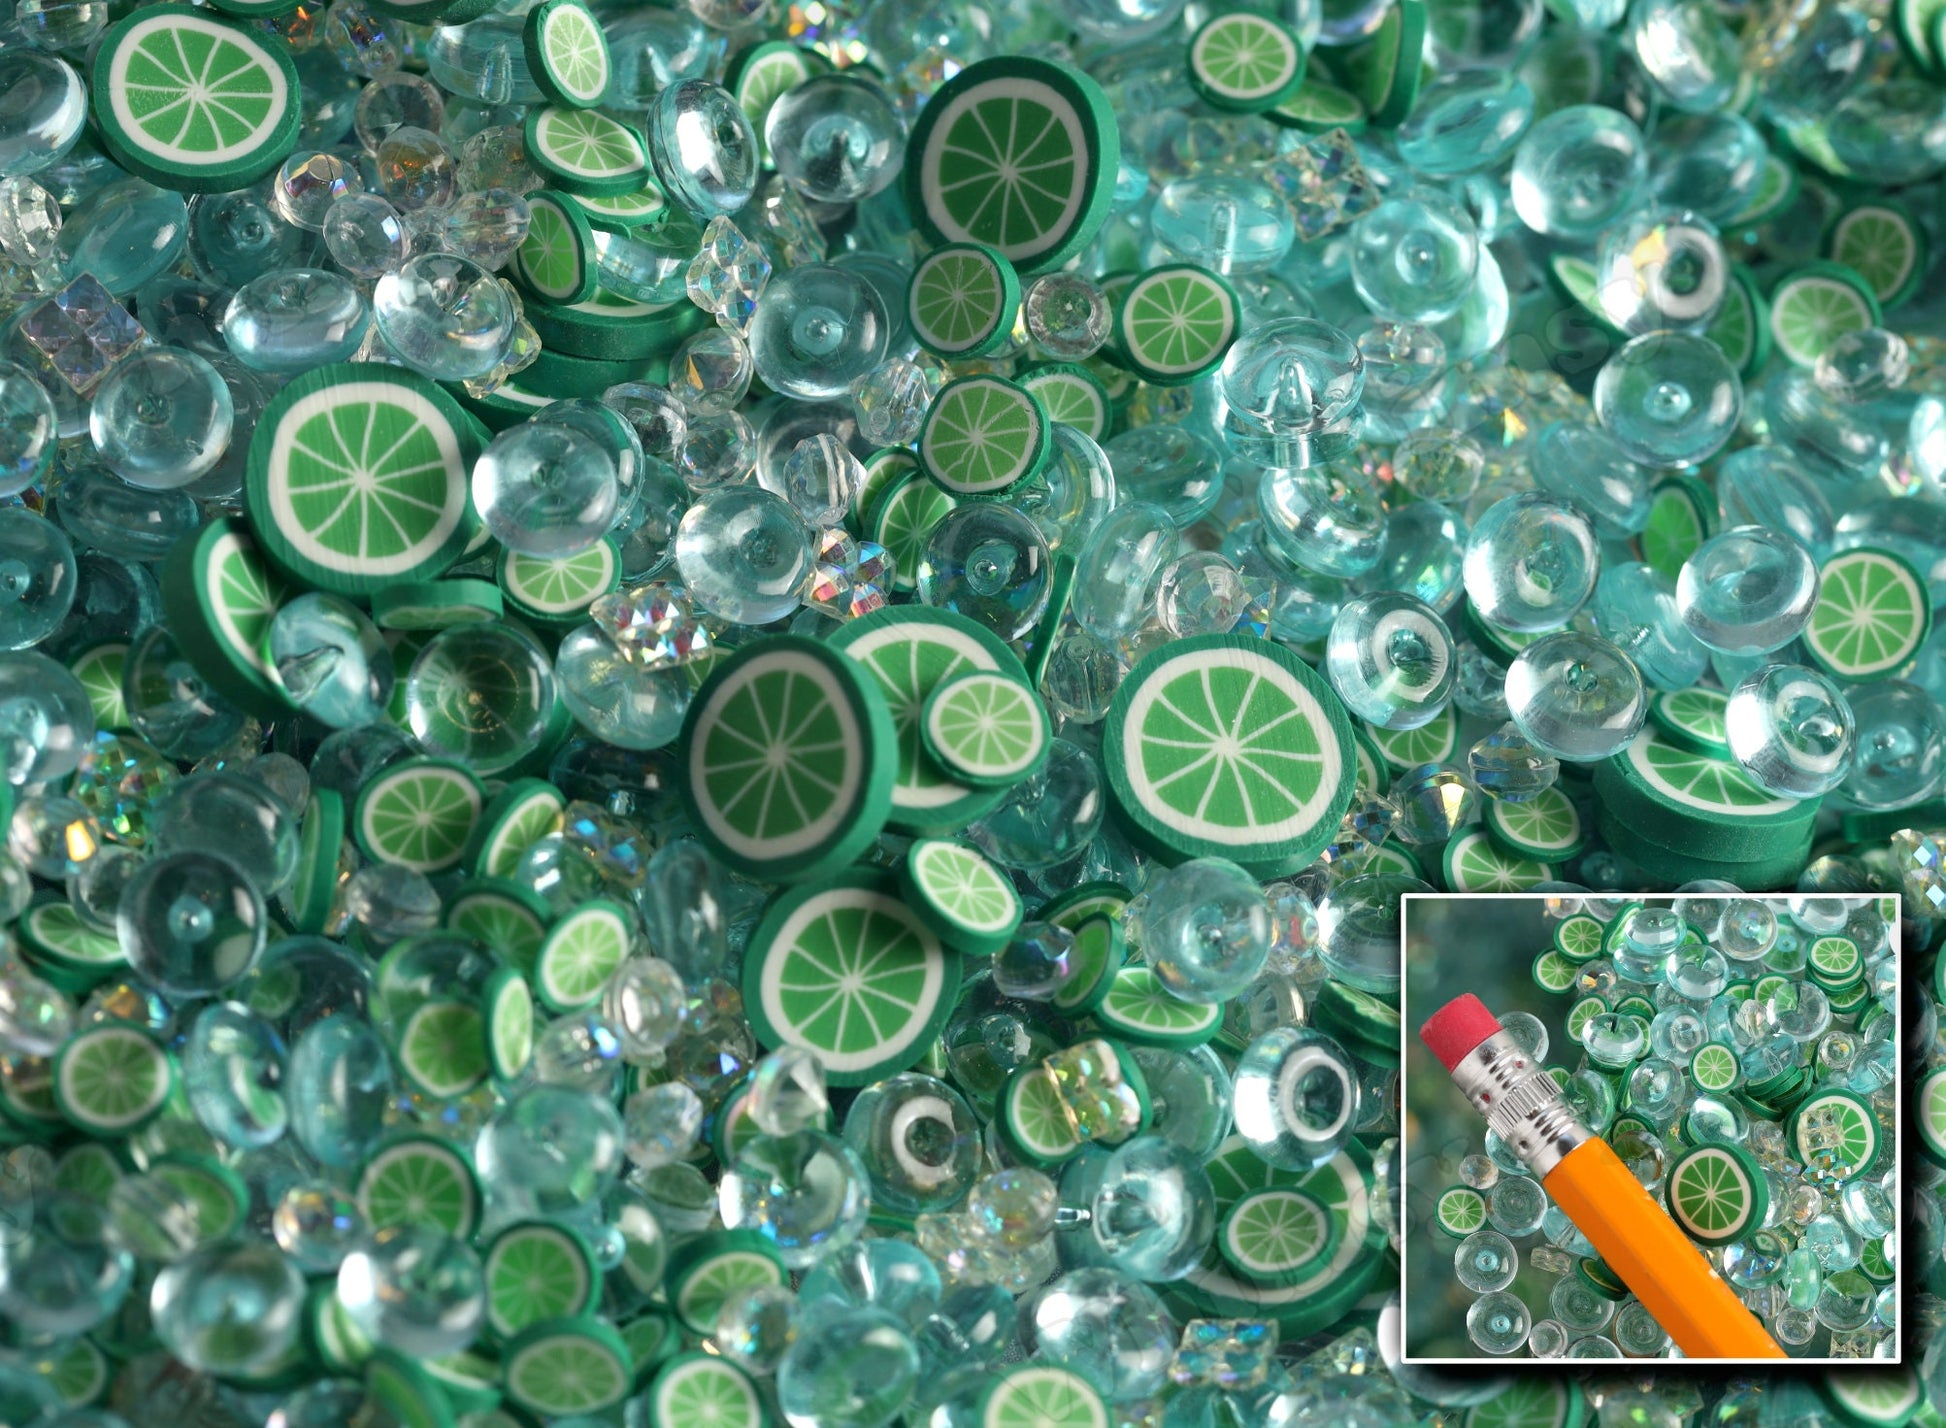 Green Polymer Clay Charms and kawaii charms